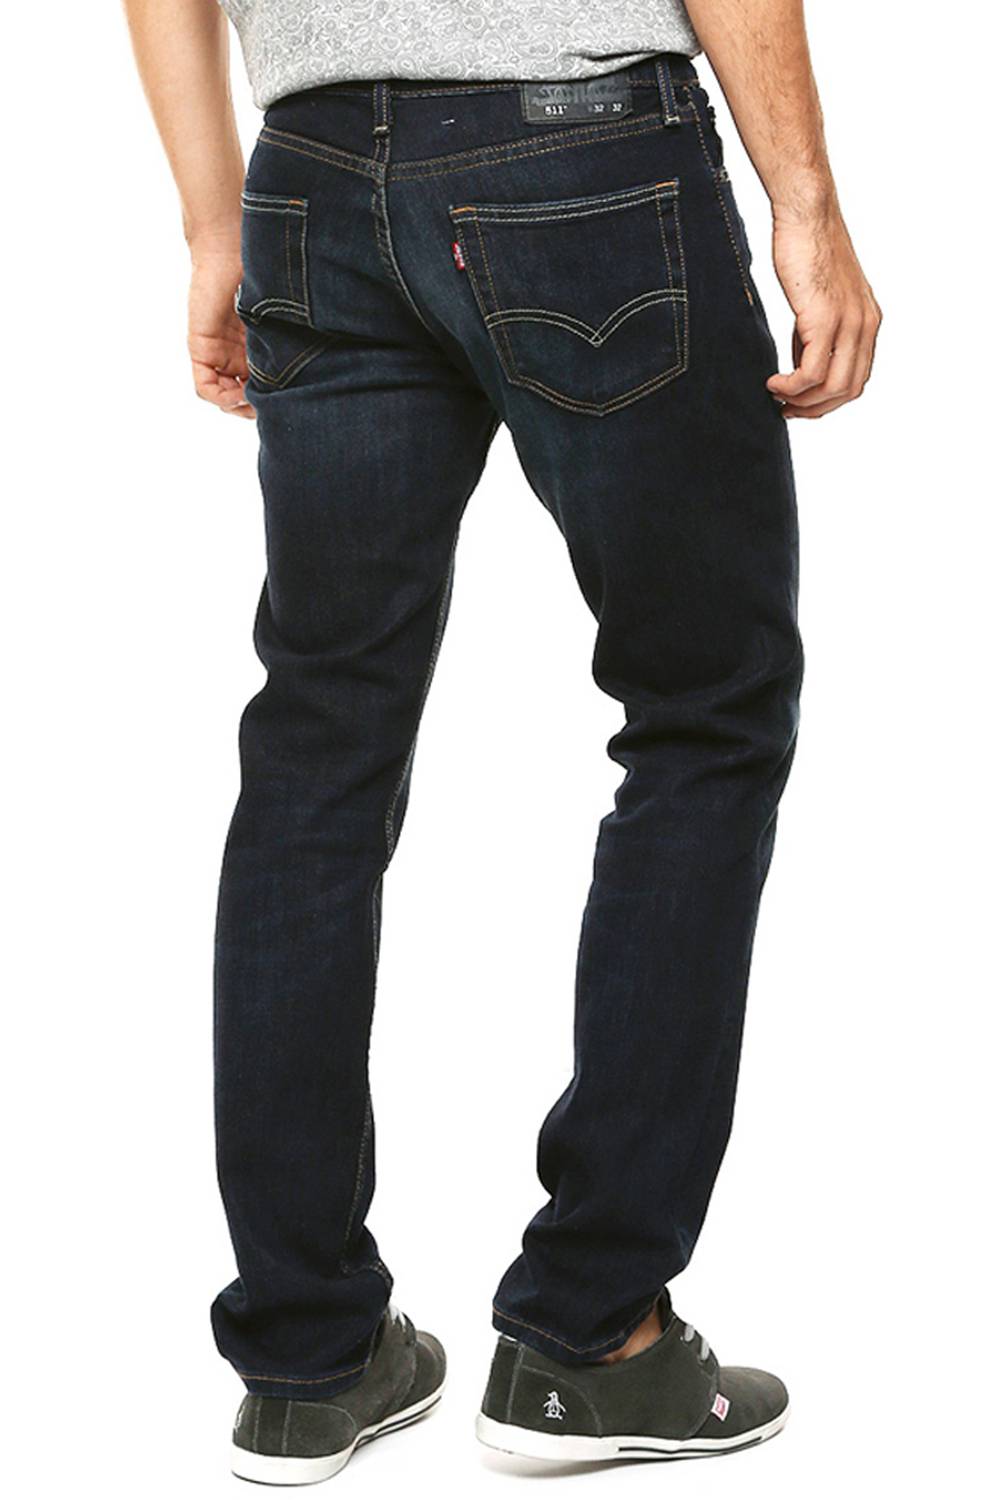 LEVIS - Jeans 5 Bolsillos Slim Fit Hombre